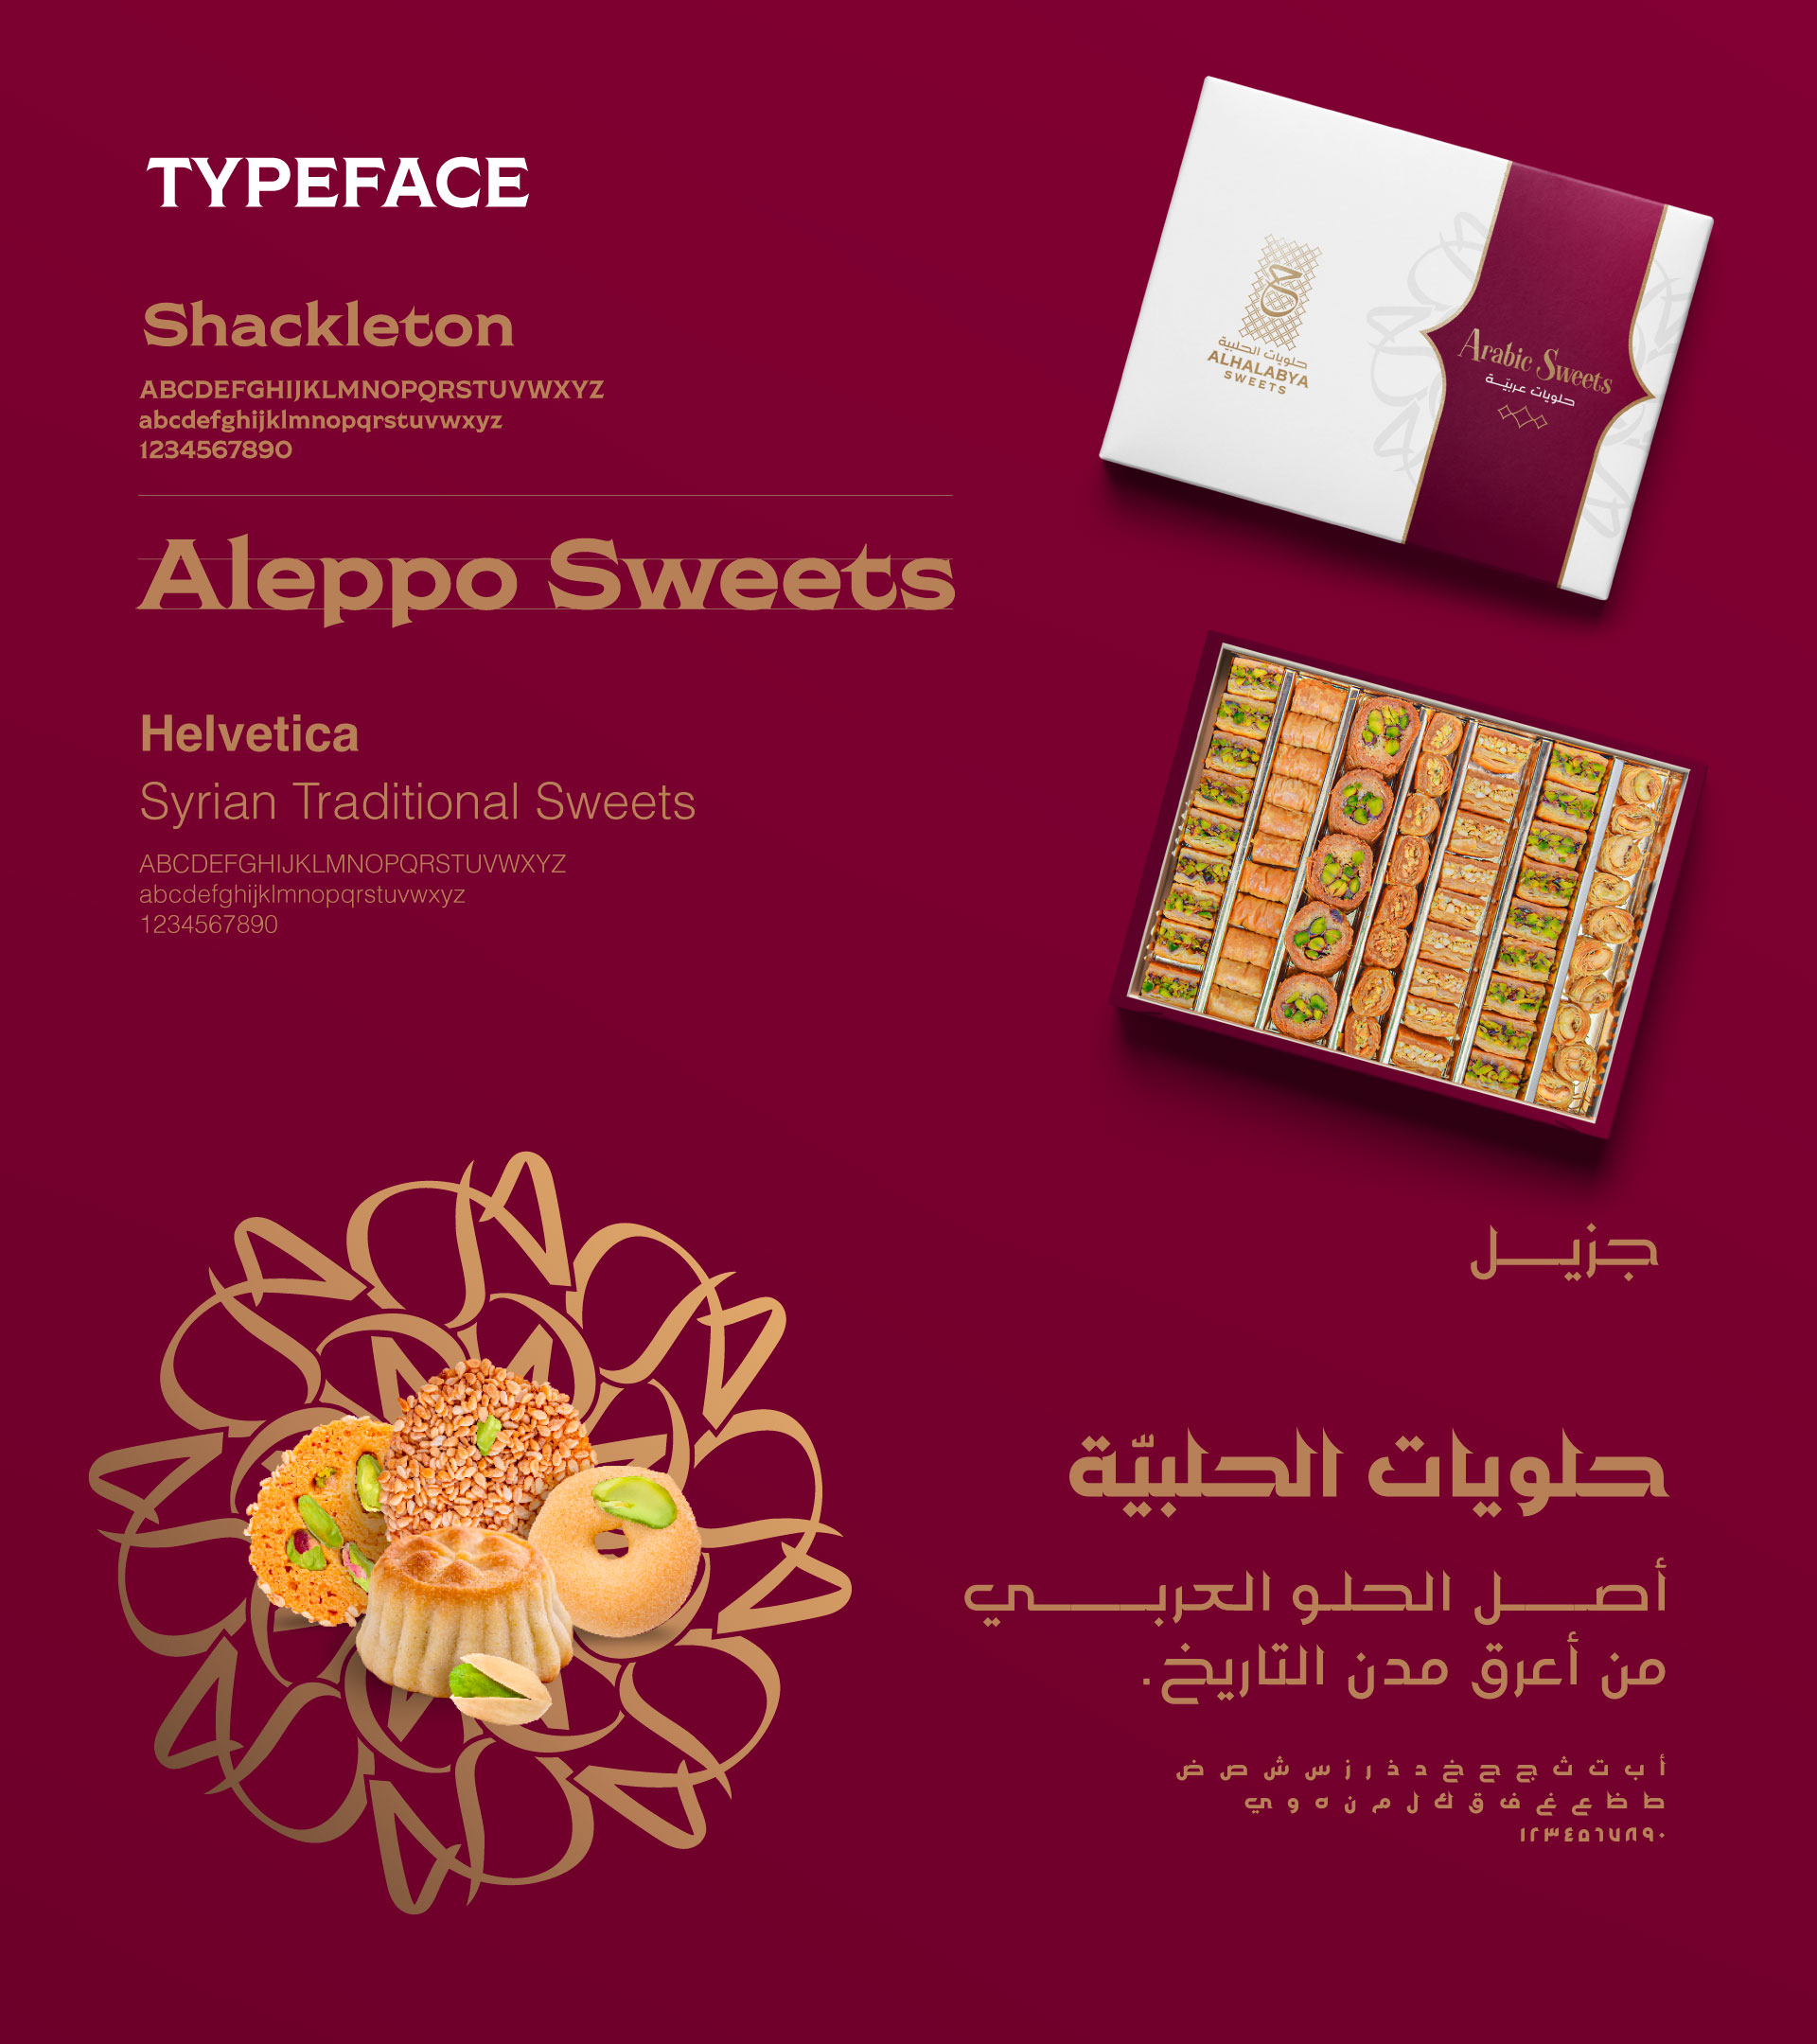 Al Halabya Sweets